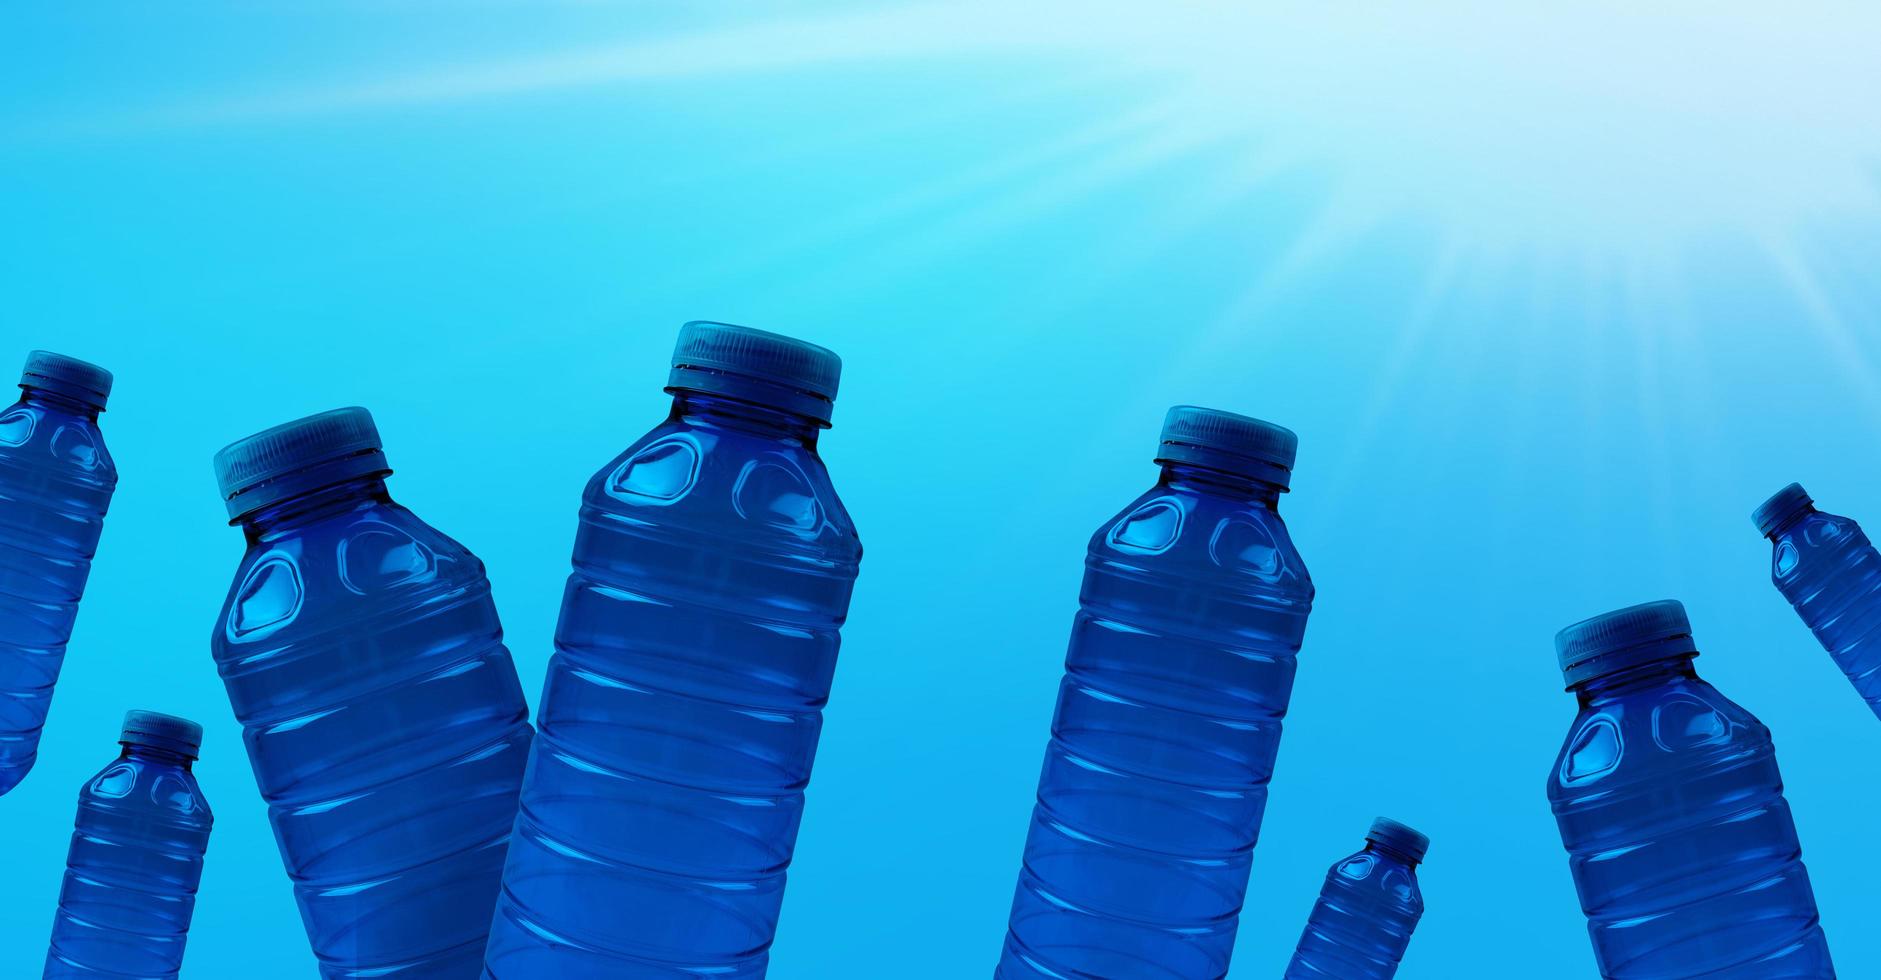 Plastikflaschen auf blauem Hintergrund. konzept des öko-banners und der sauberkeit der erde. foto